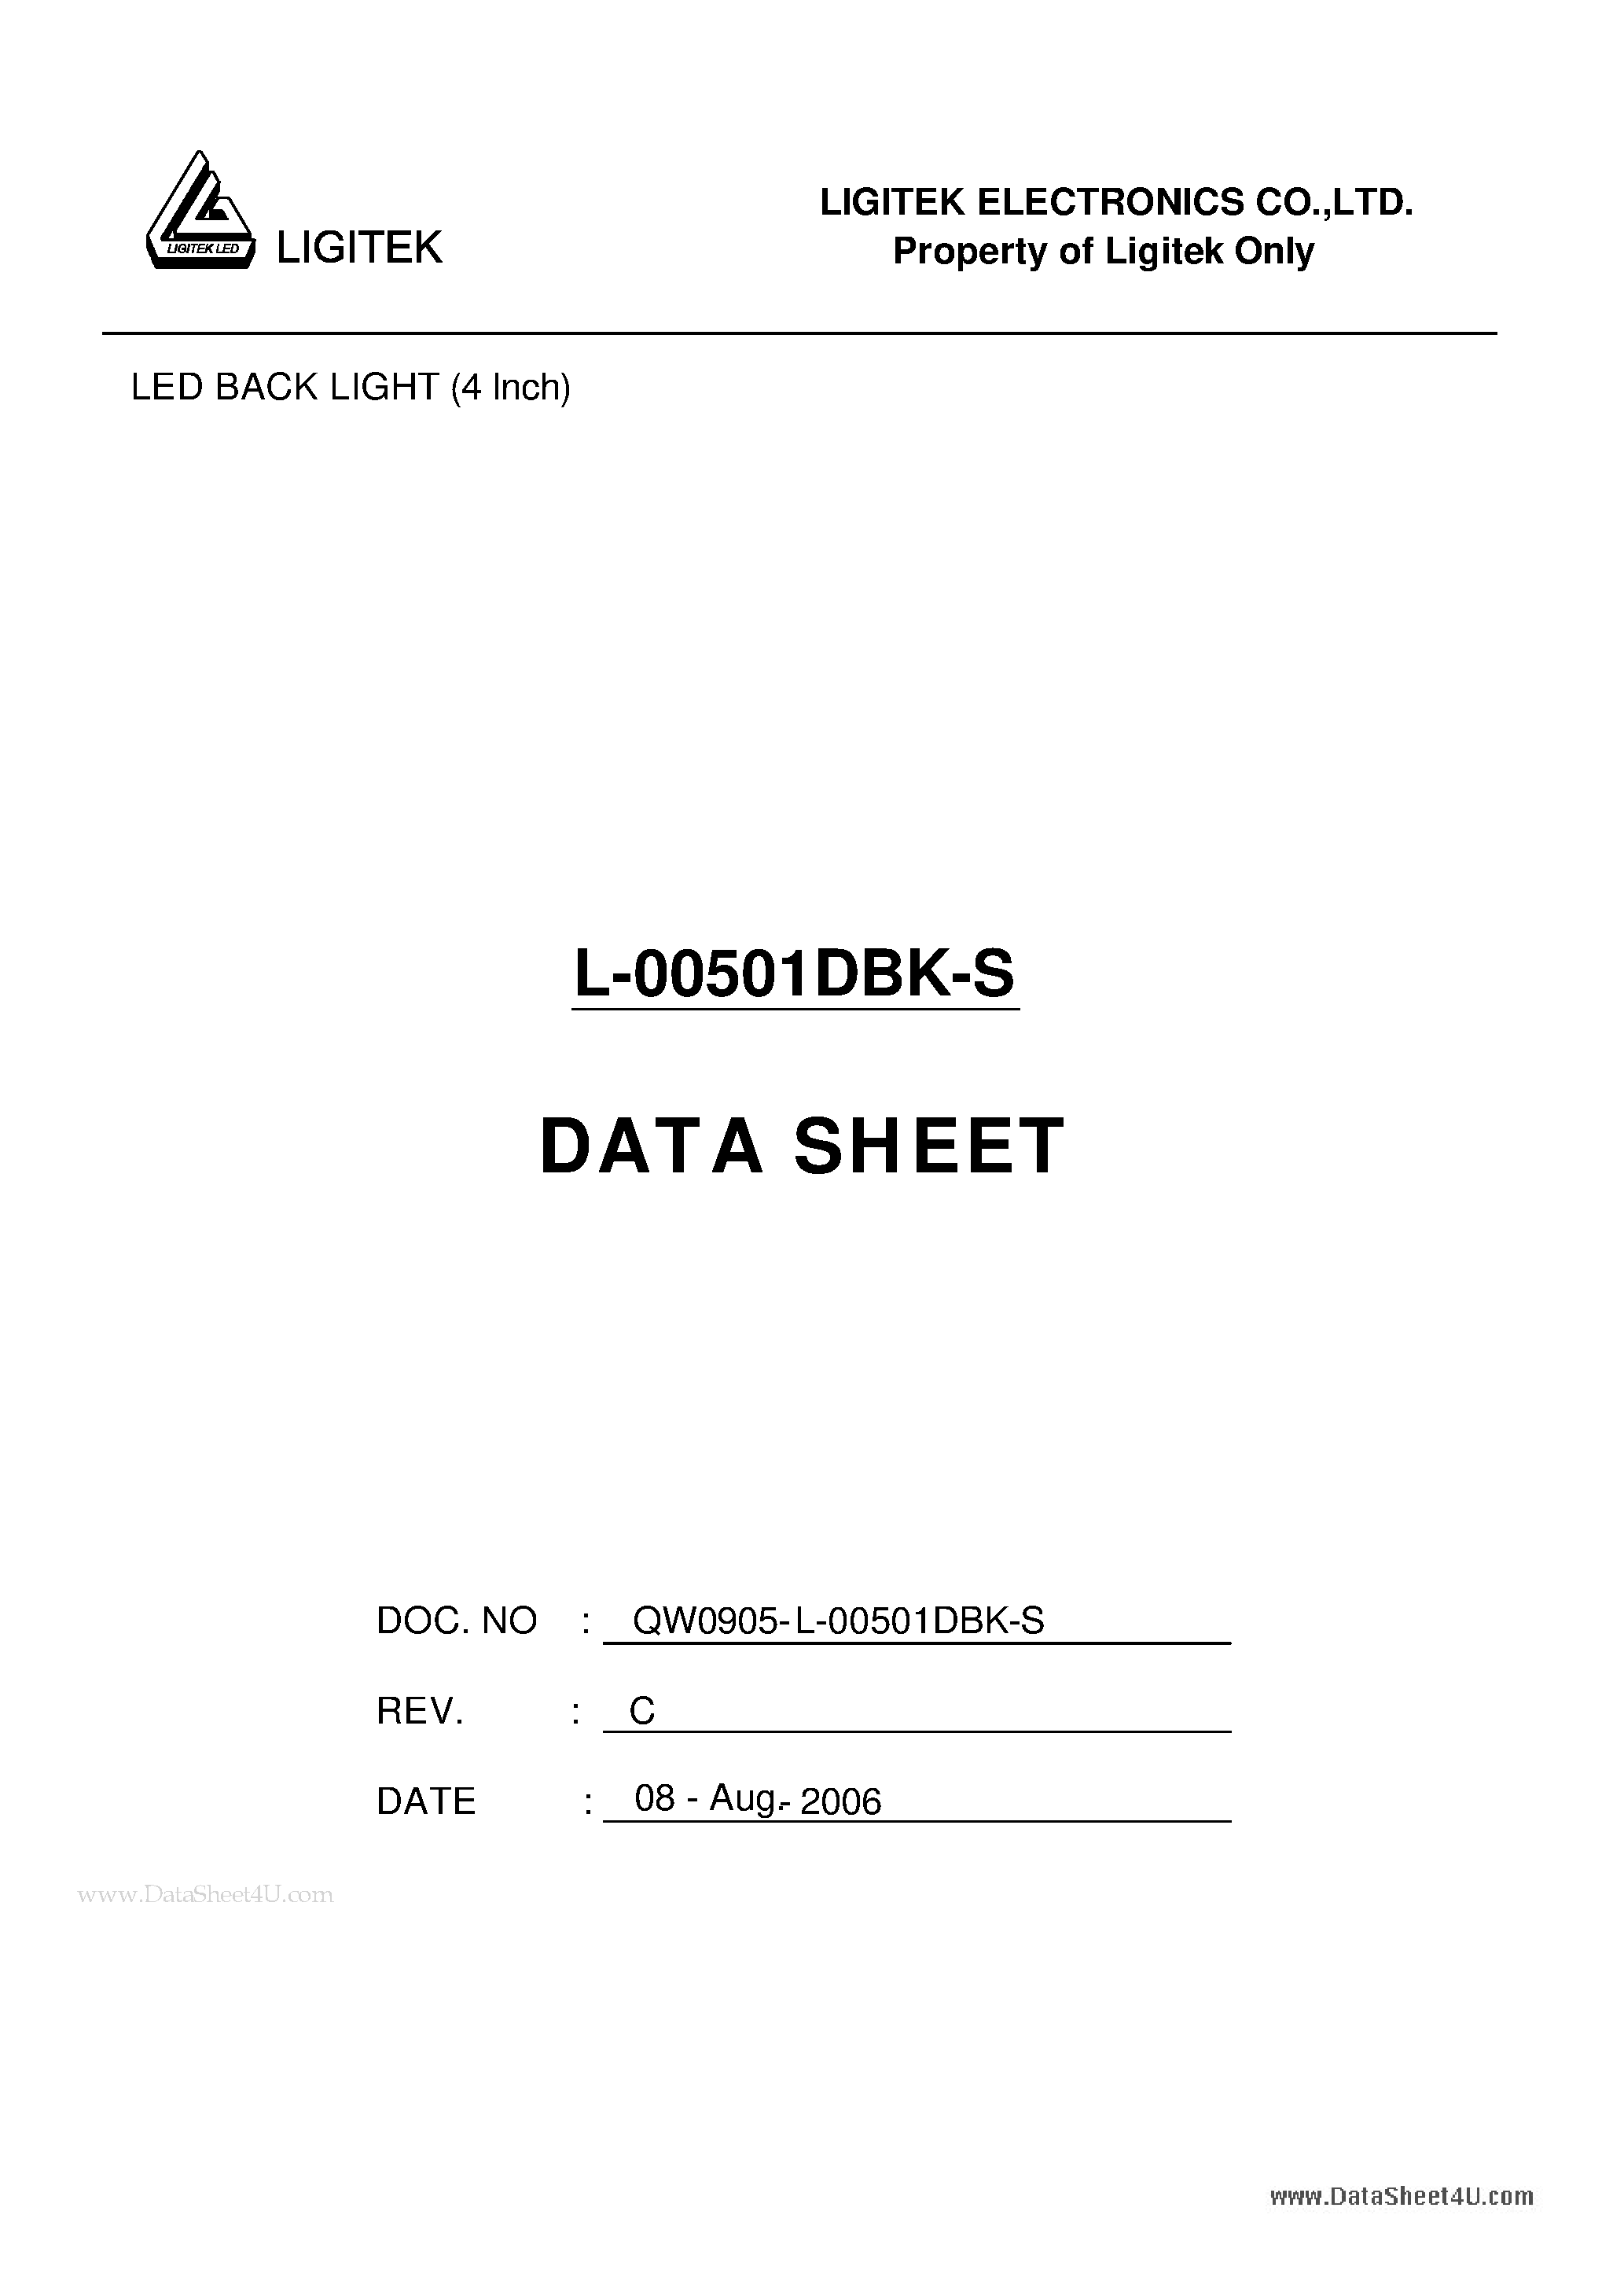 Даташит L-00501DBK-S-LED BACK LIGHT (4 Inch) страница 1